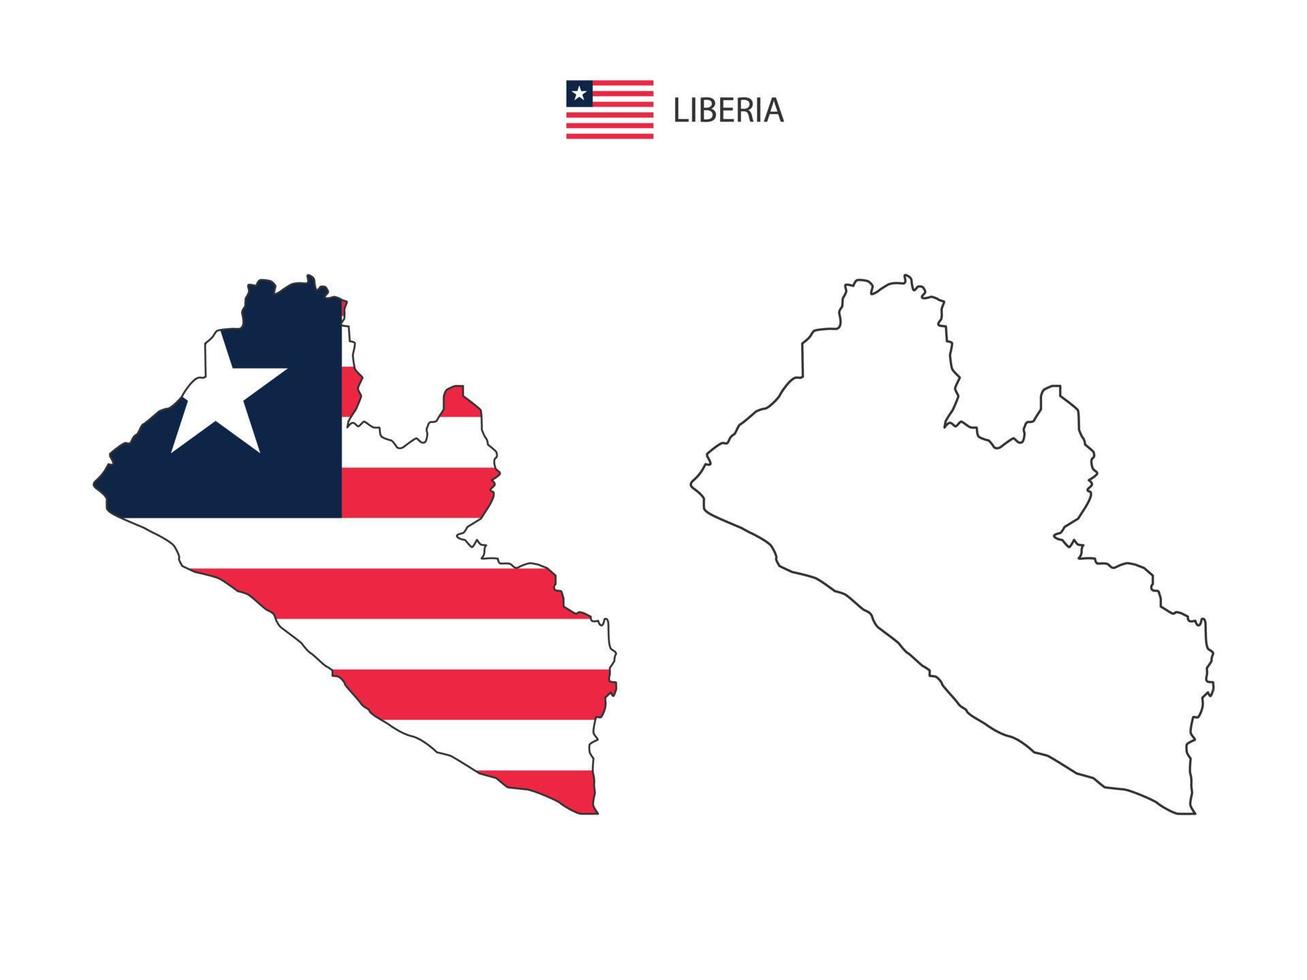 vetor da cidade do mapa da libéria dividido pelo estilo de simplicidade do contorno. tem 2 versões, versão de linha fina preta e cor da versão da bandeira do país. ambos os mapas estavam no fundo branco.